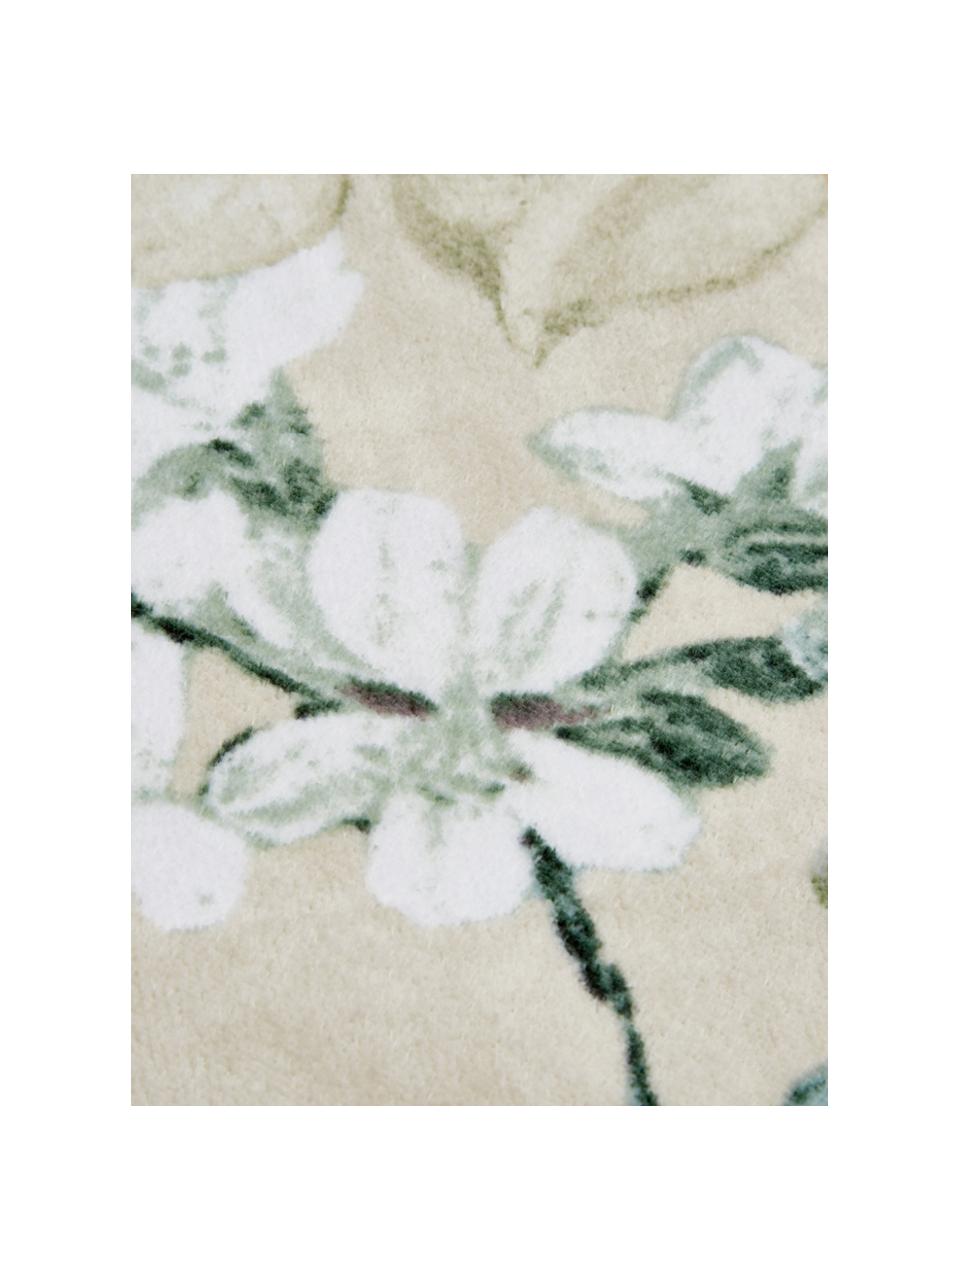 Handtuch Rosalee in verschiedenen Grössen, mit Blumen-Muster, 100% Bio-Baumwolle, GOTS-zertifiziert, Beige, gemustert, Duschtuch, B 70 x L 140 cm